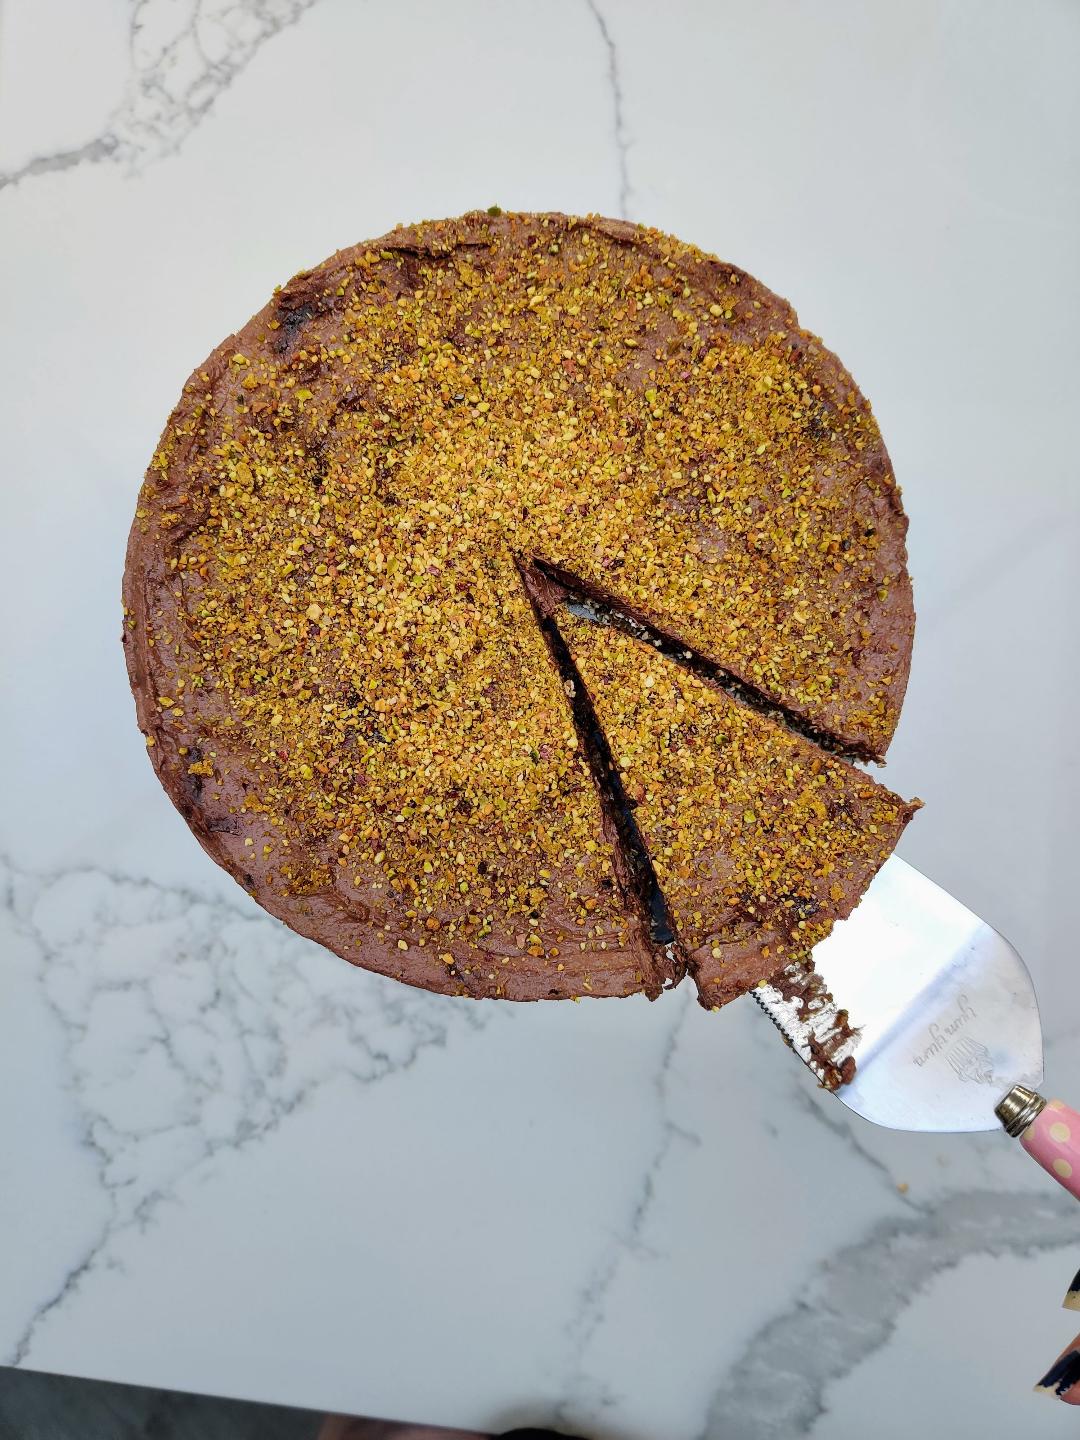 Chocolate pistachio torte